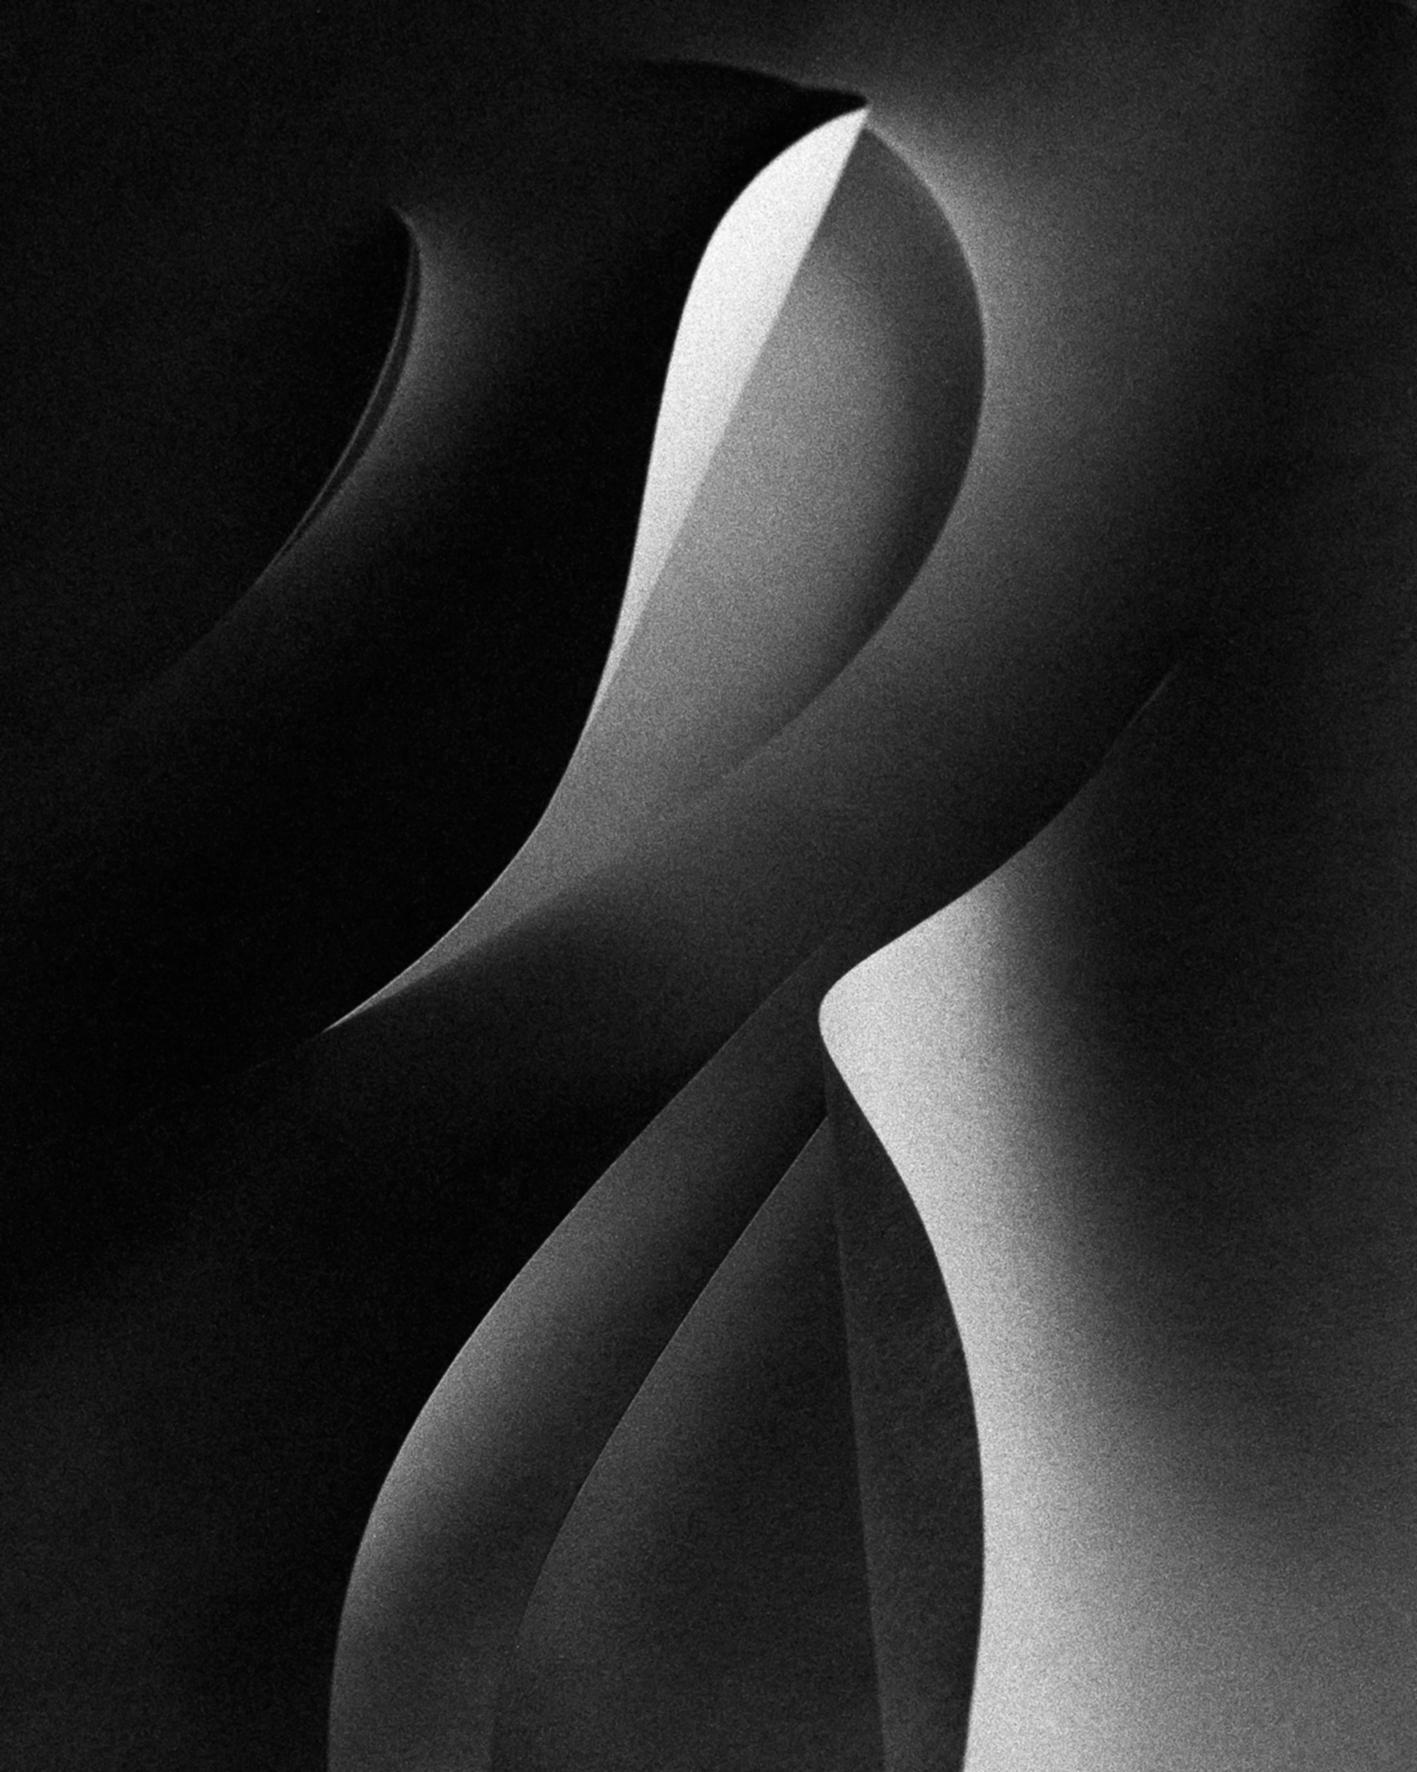 Ugne Pouwell Black and White Photograph – Papierschnitt – analoge abstrakte Schwarz-Weiß-Fotografie. Ltd. 10